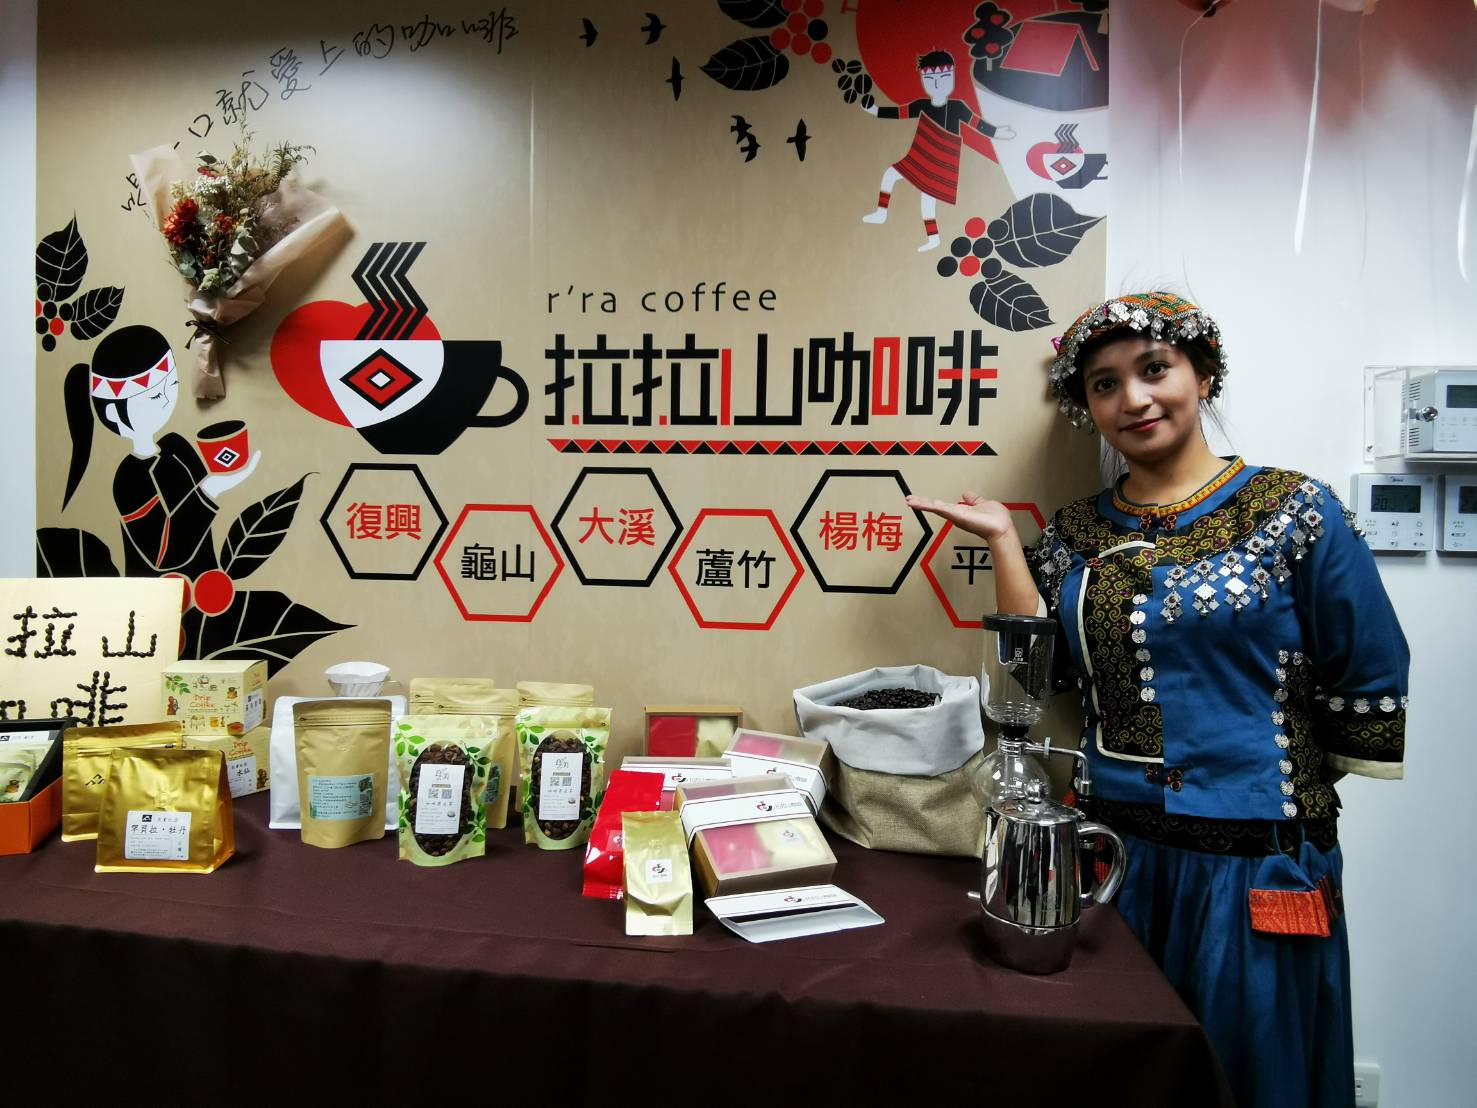 桃市府發表「拉拉山咖啡R'ra Coffee」品牌，帶動桃園在地咖啡產業發展